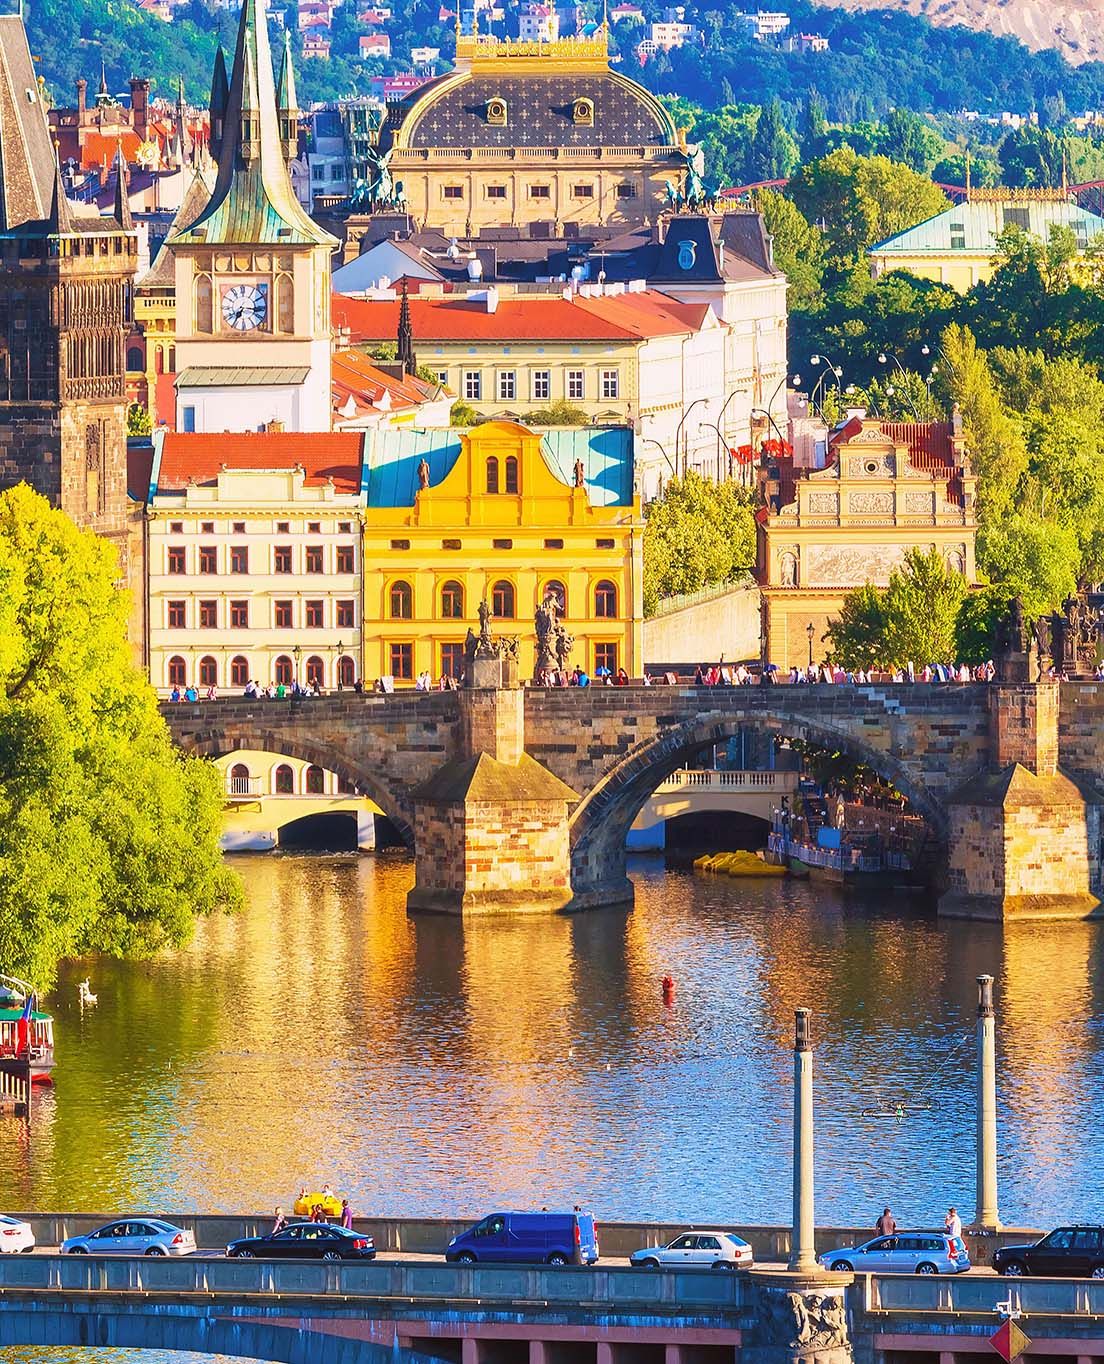 لمحة عن الجمهورية التشيكية